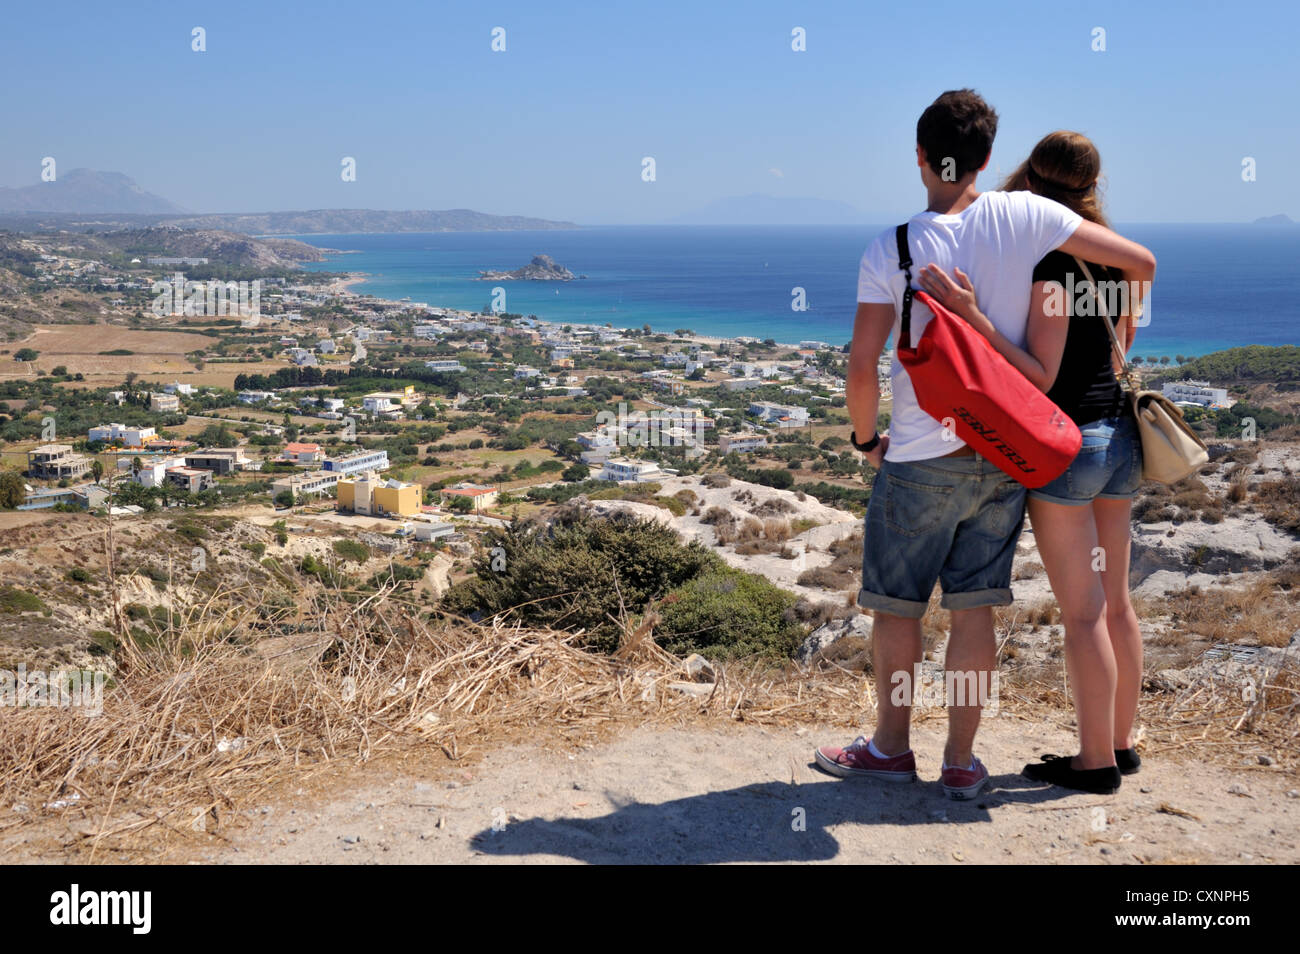 Couple overlooking town of Kefalos on Aegean sea on island of Kos, Greece Stock Photo